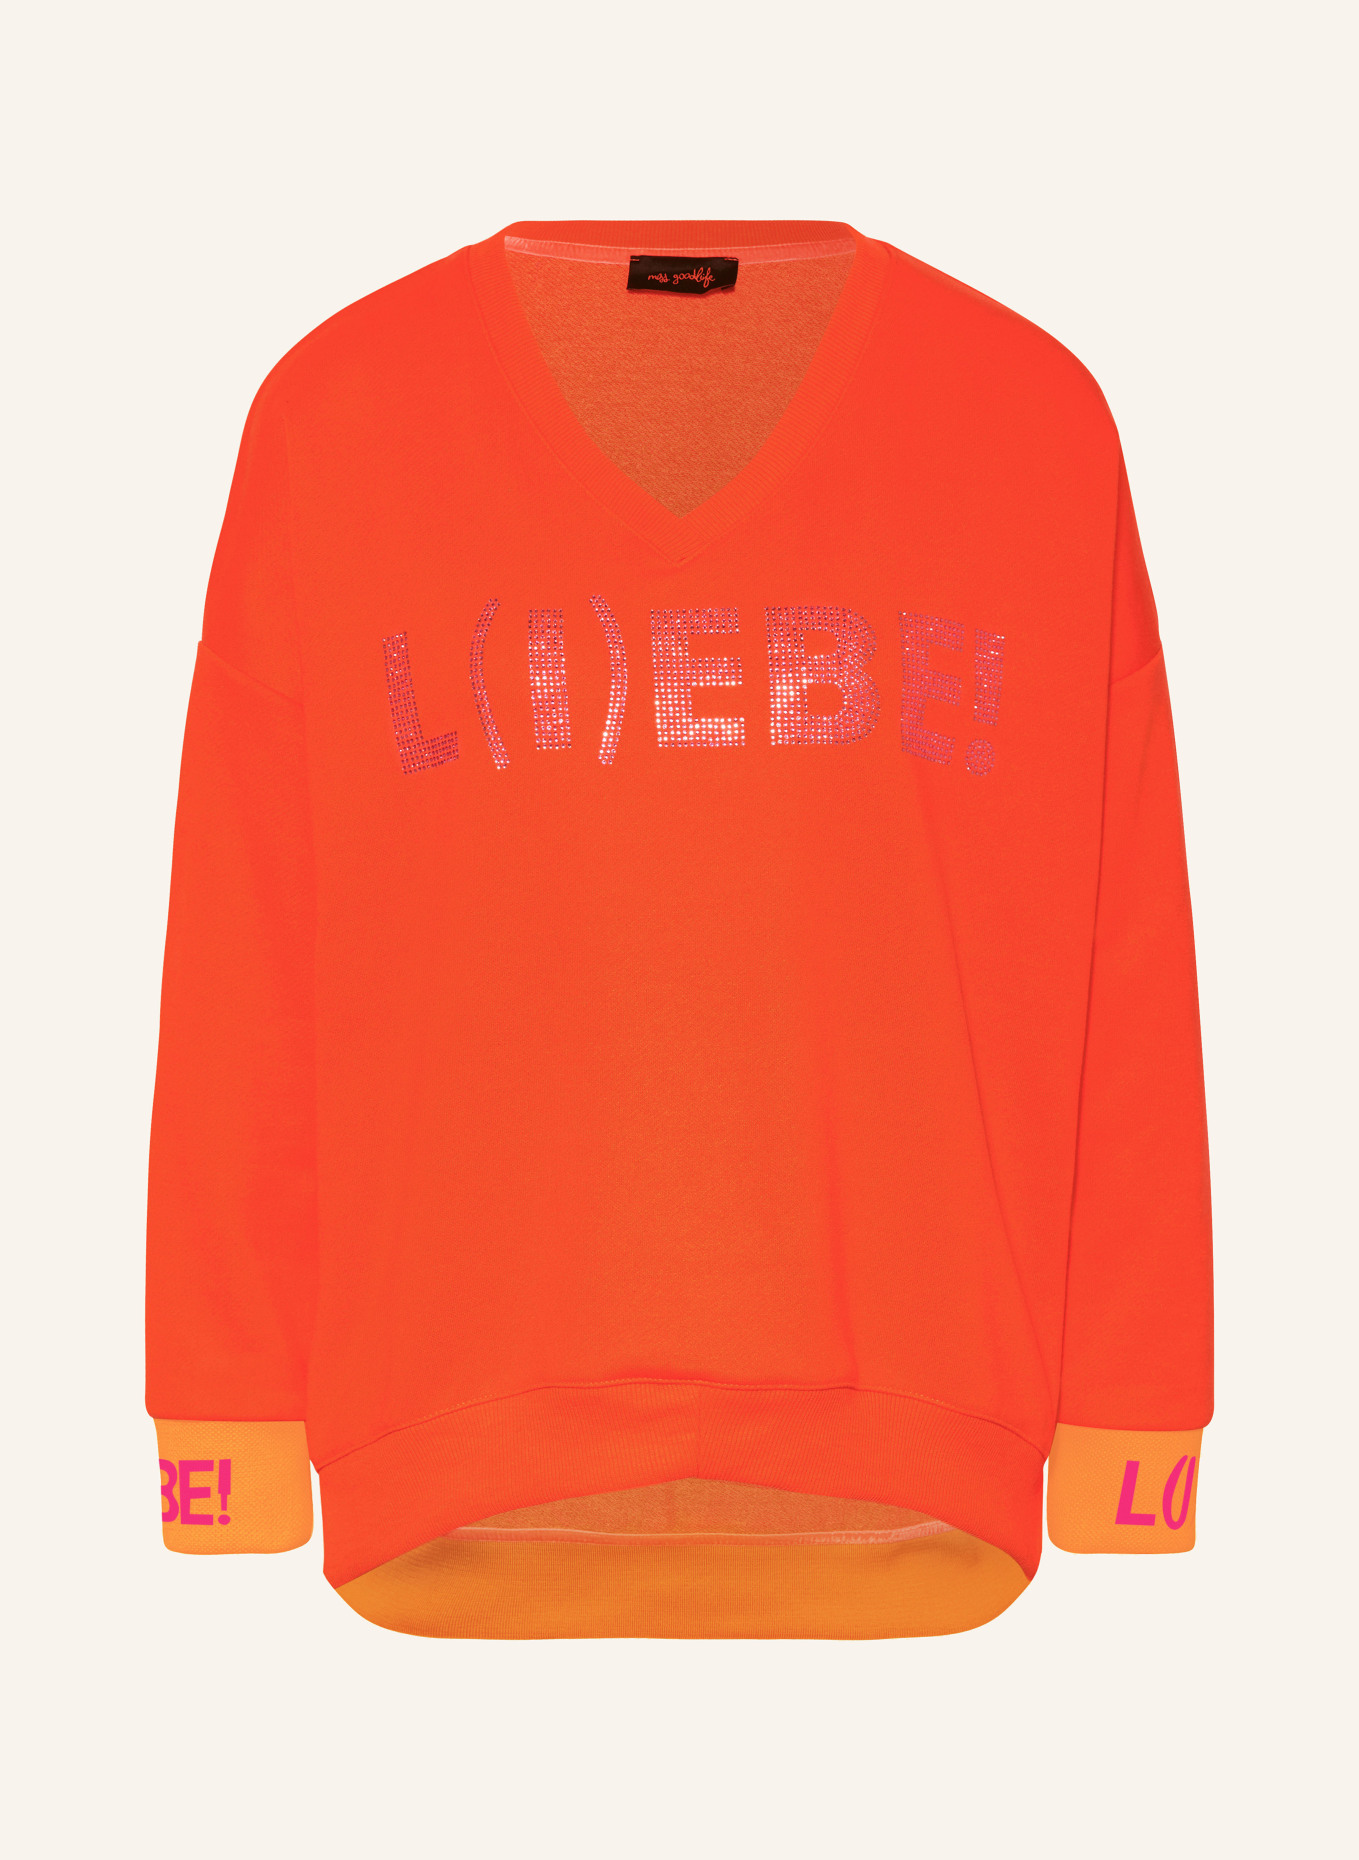 miss goodlife Sweatshirt mit Schmucksteinen, Farbe: NEONORANGE/ NEONPINK (Bild 1)